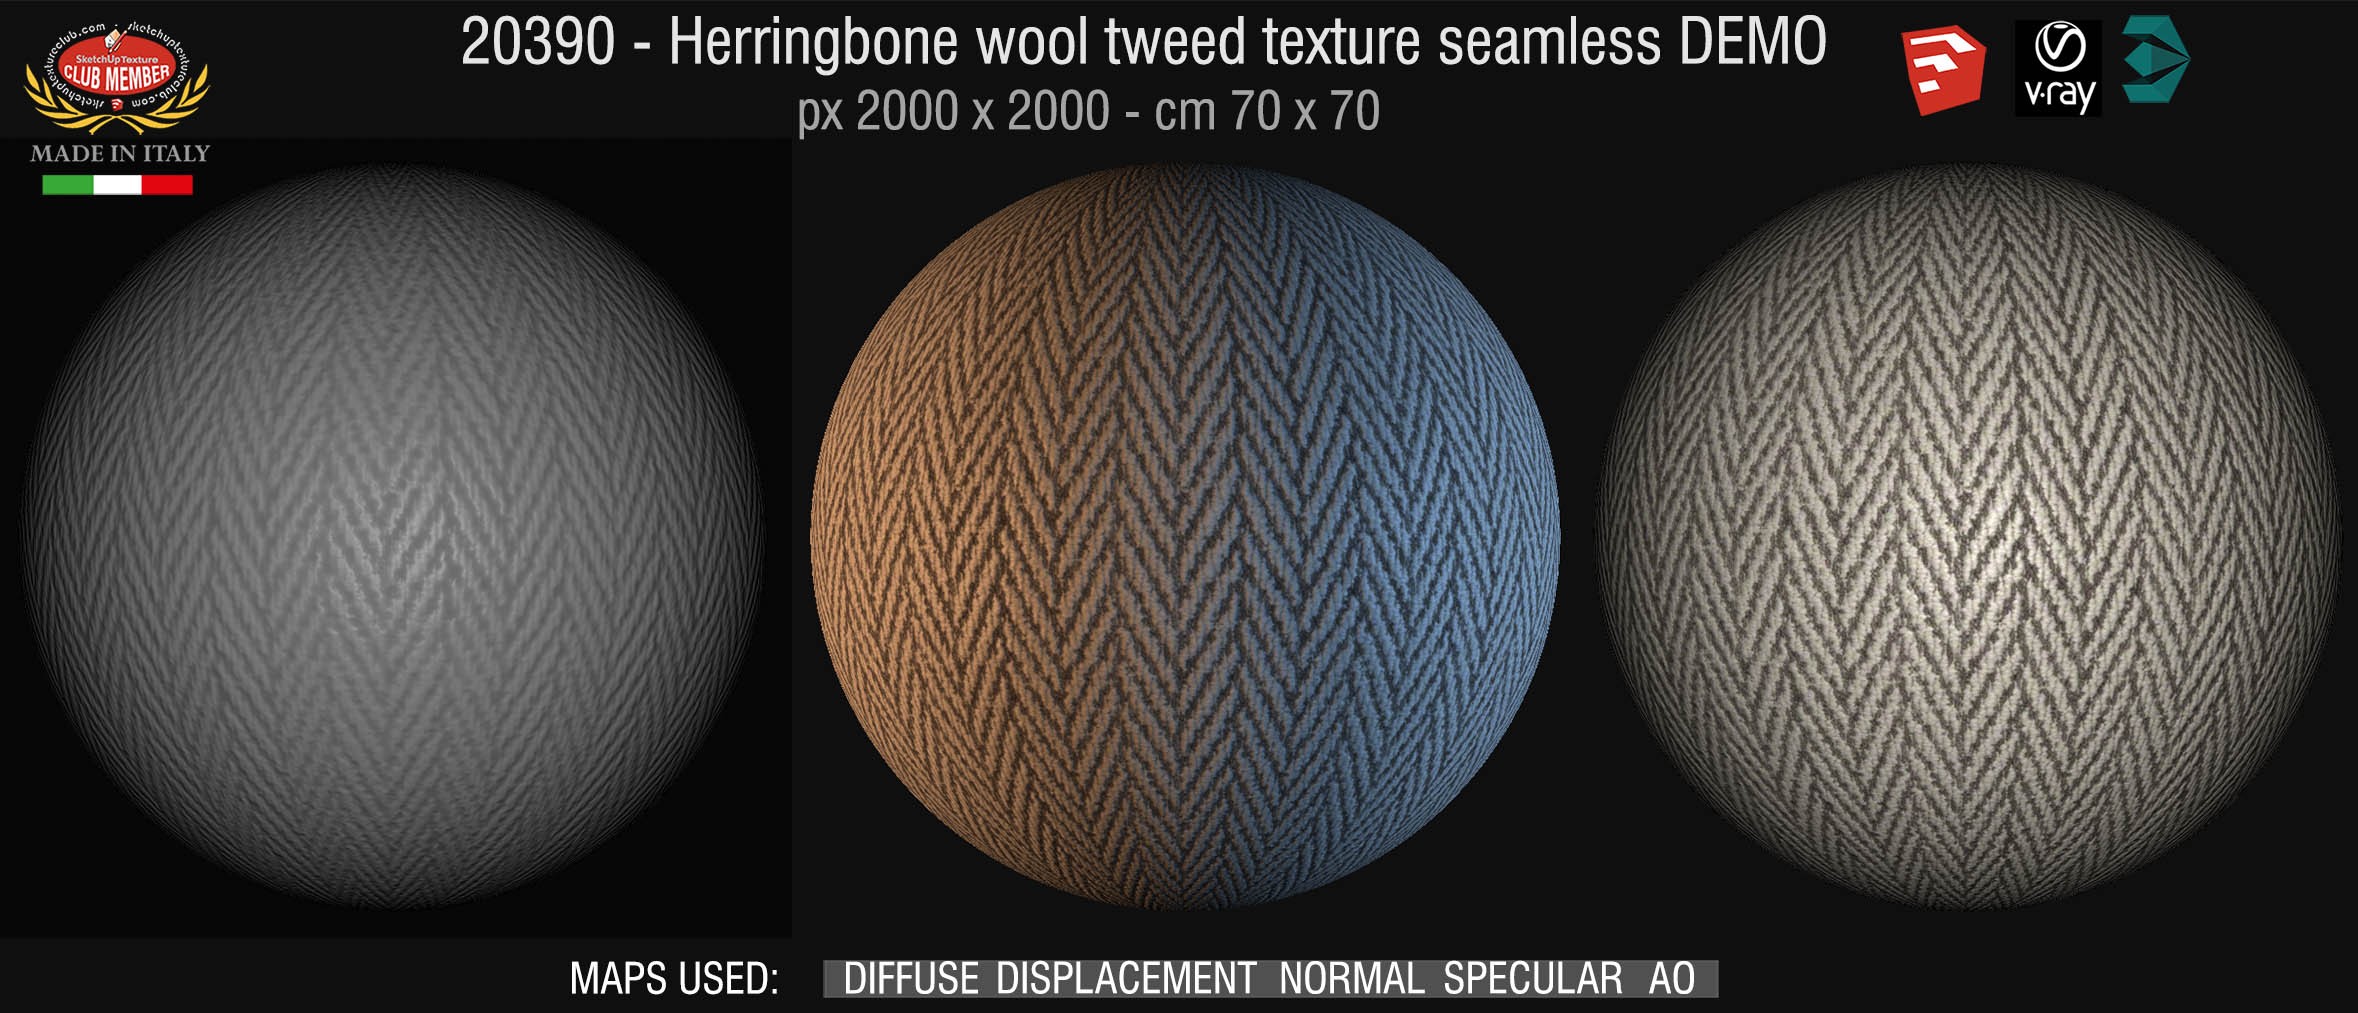 20390 Herringbone wool tweed texture seamless + maps DEMO